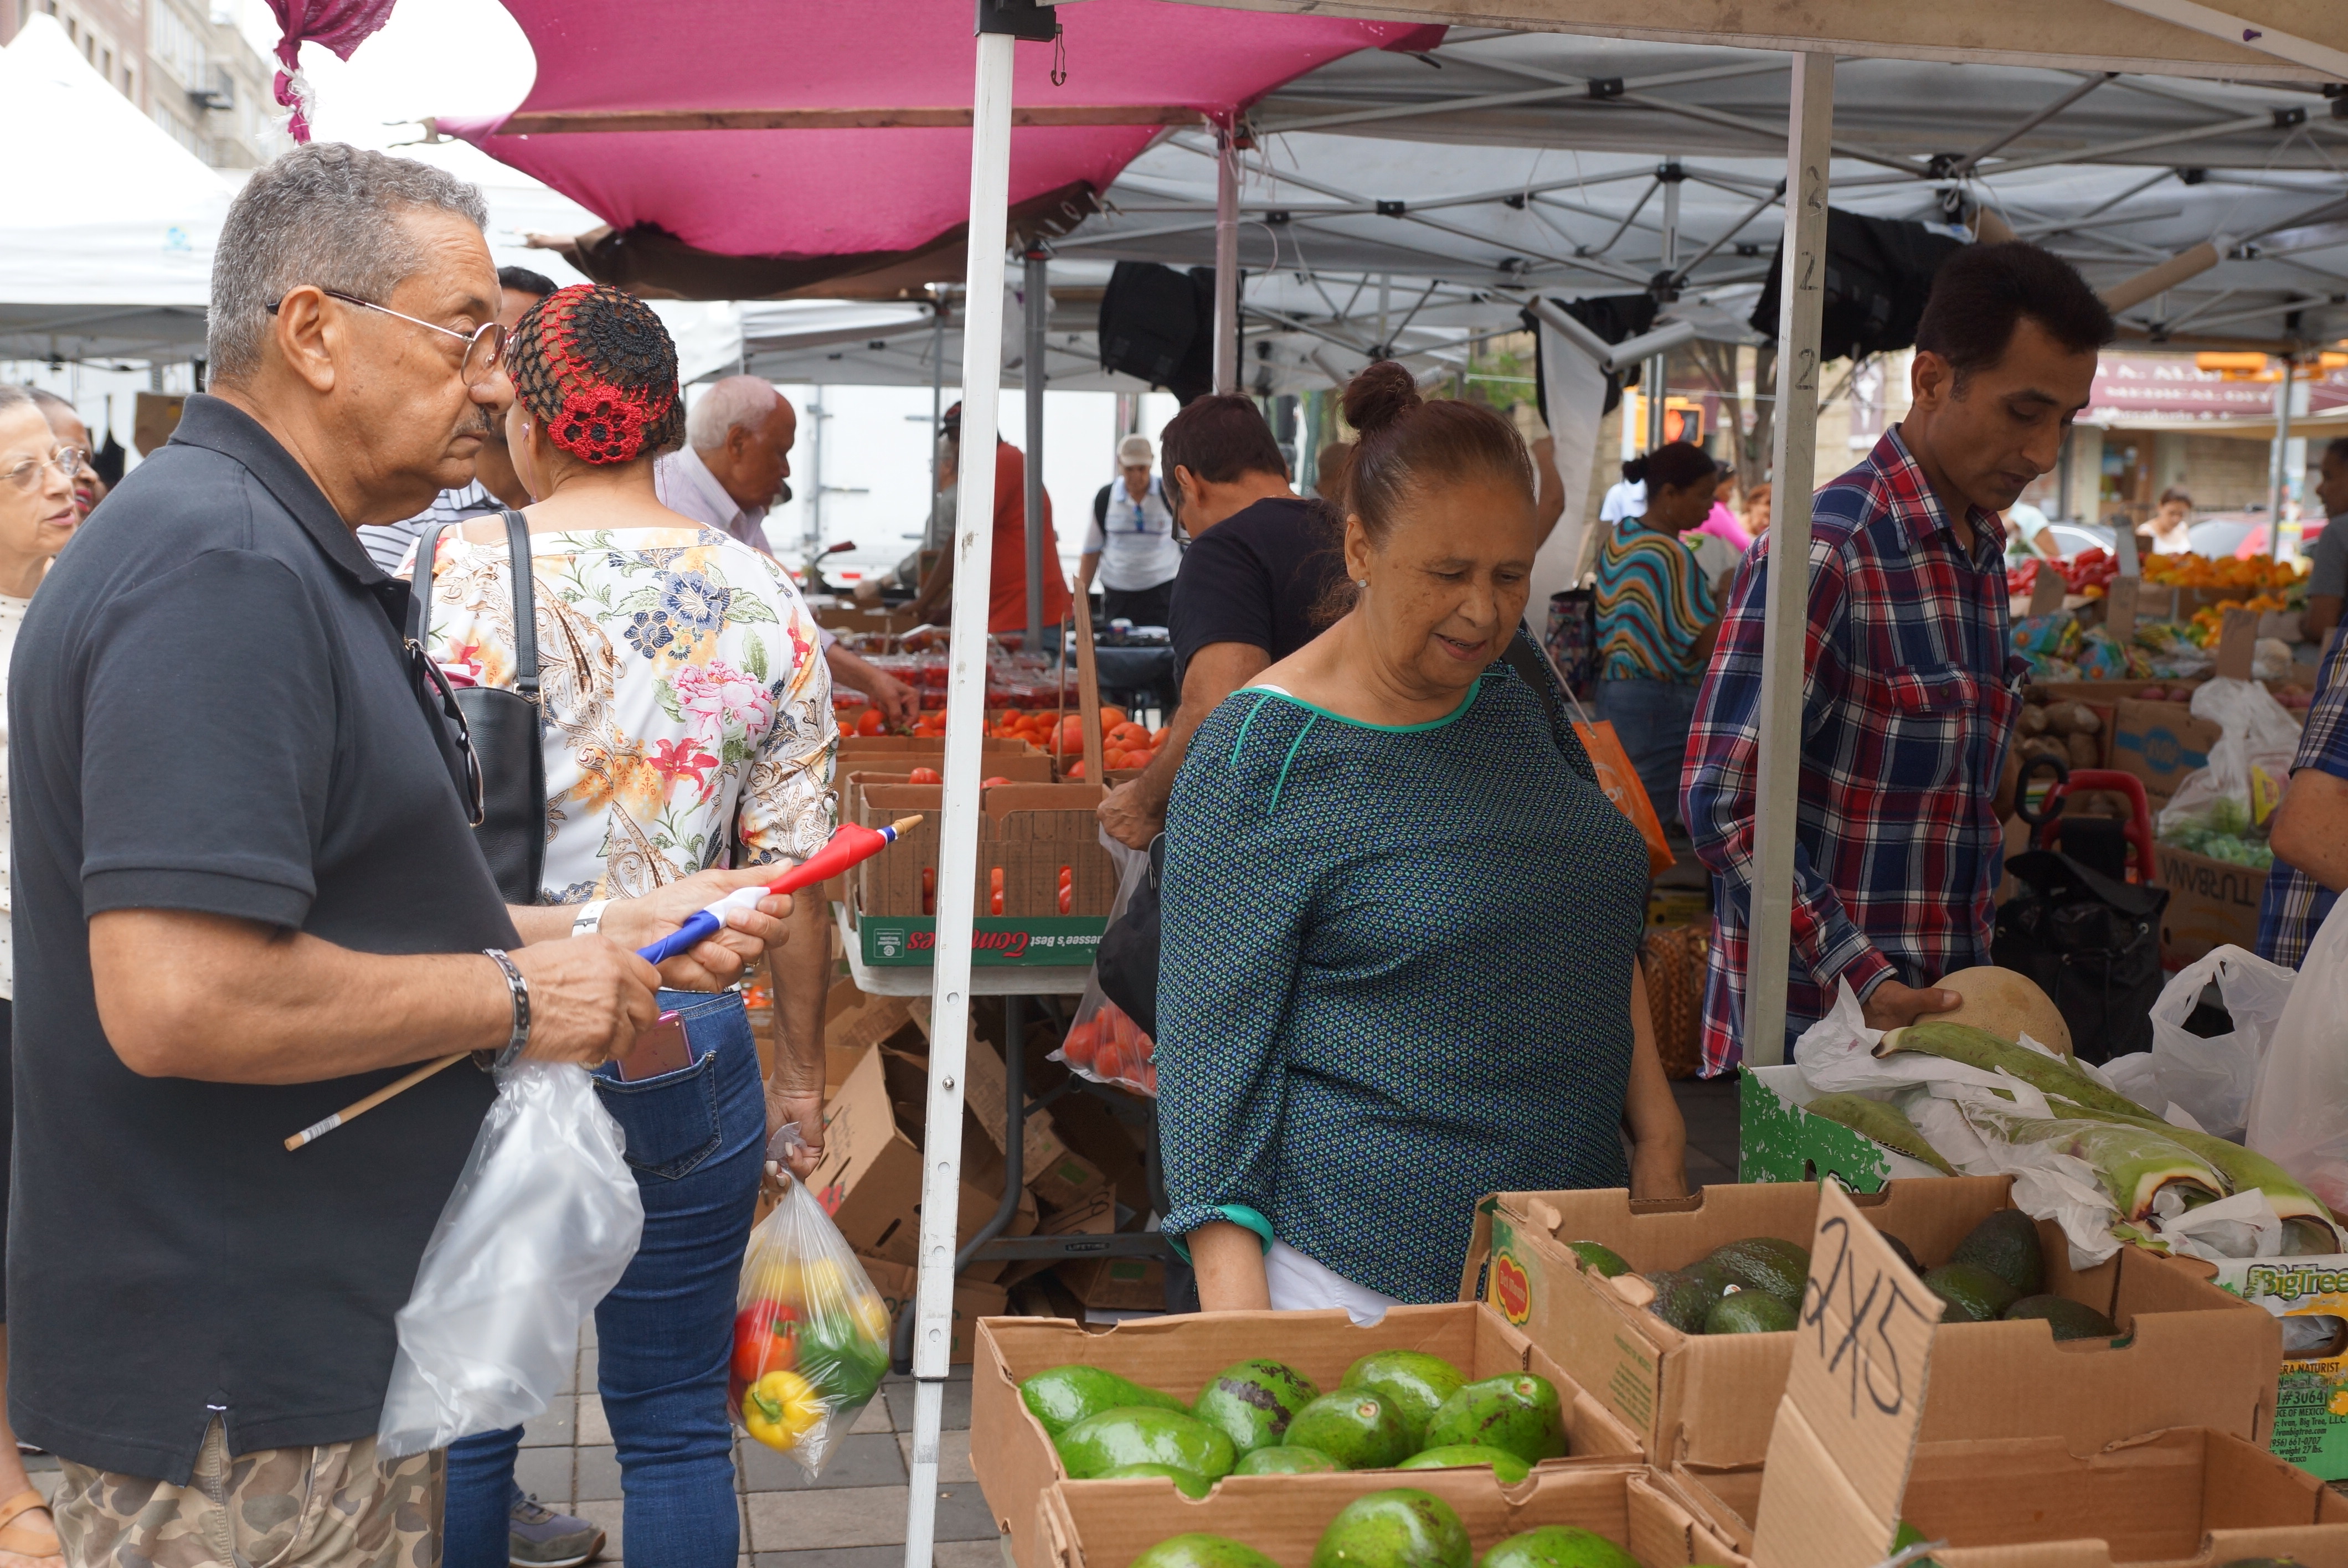 Dos dominicanos compran verduras en el mercado de Plaza de las Américas en Washington Heights.